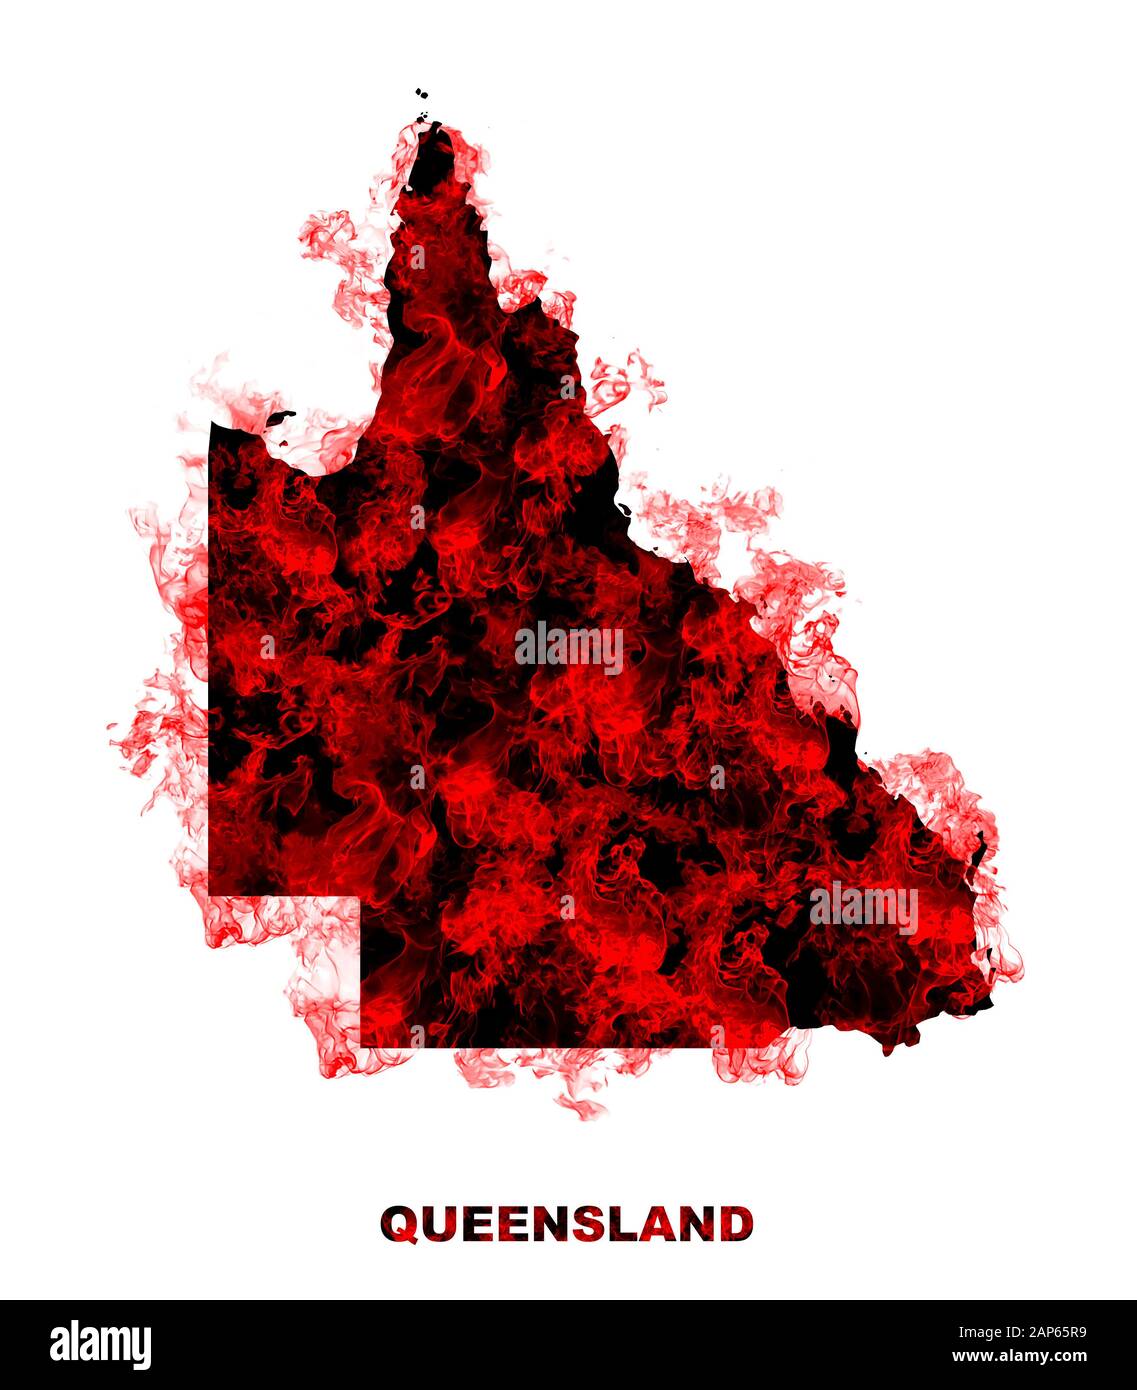 Mapa De Queensland Fuego De Fondo Blanco. Fuego De Caza En Australia Wilderness. Save Australia Concept. Serie De Incendios Forestales Masivos En Toda Australia. Foto de stock